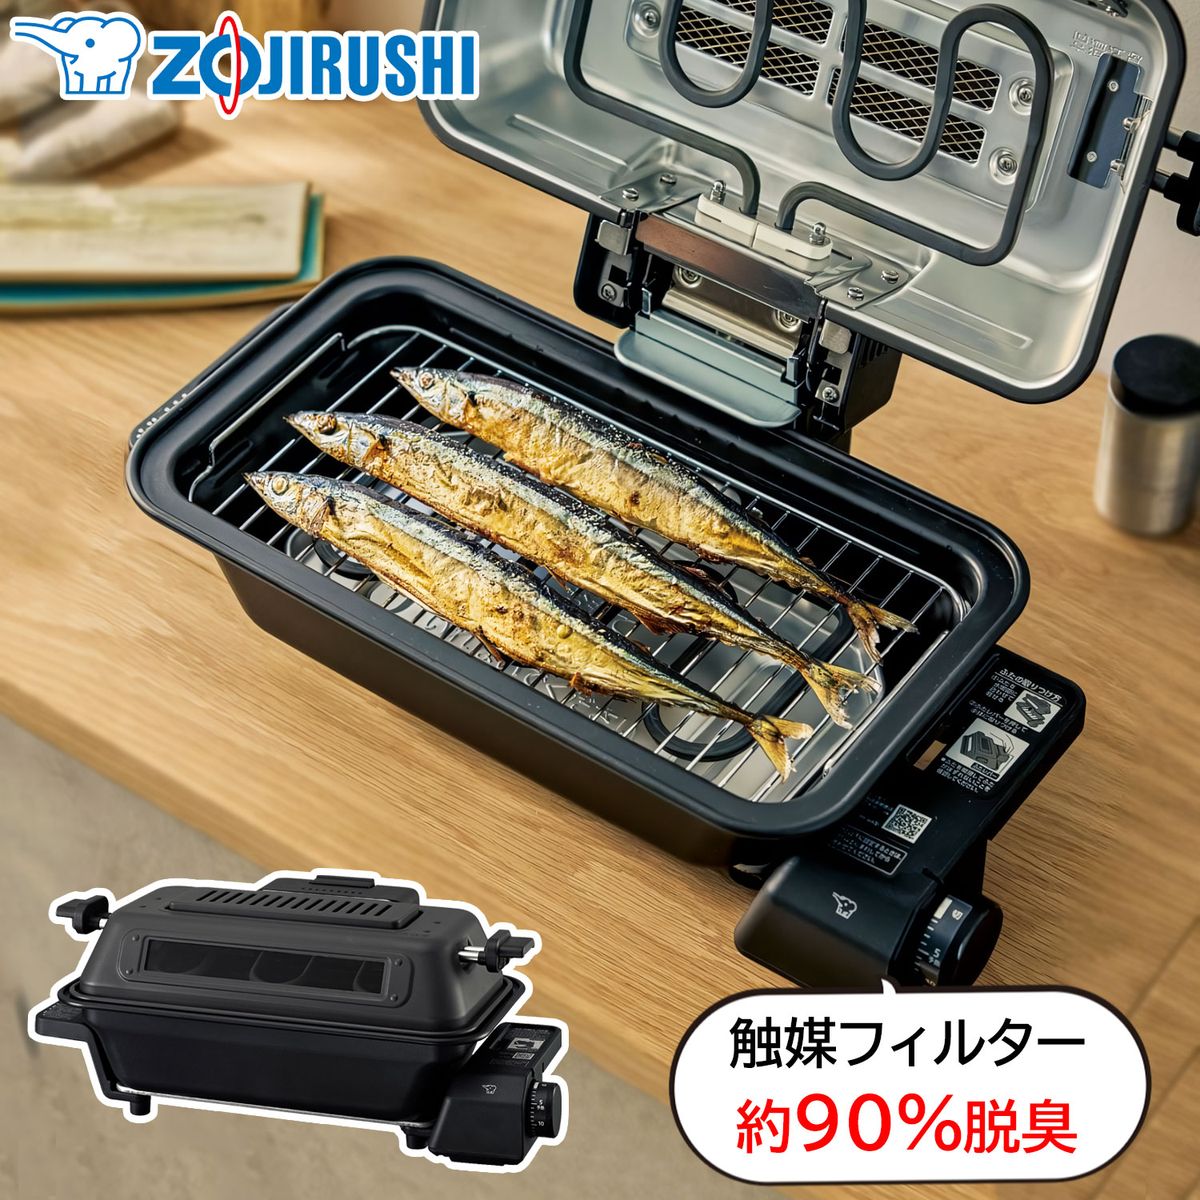 ZOJIRUSHI フィッシュロースター マルチグリル 魚焼き器 チャコール 焼き魚 さんまが4尾焼ける